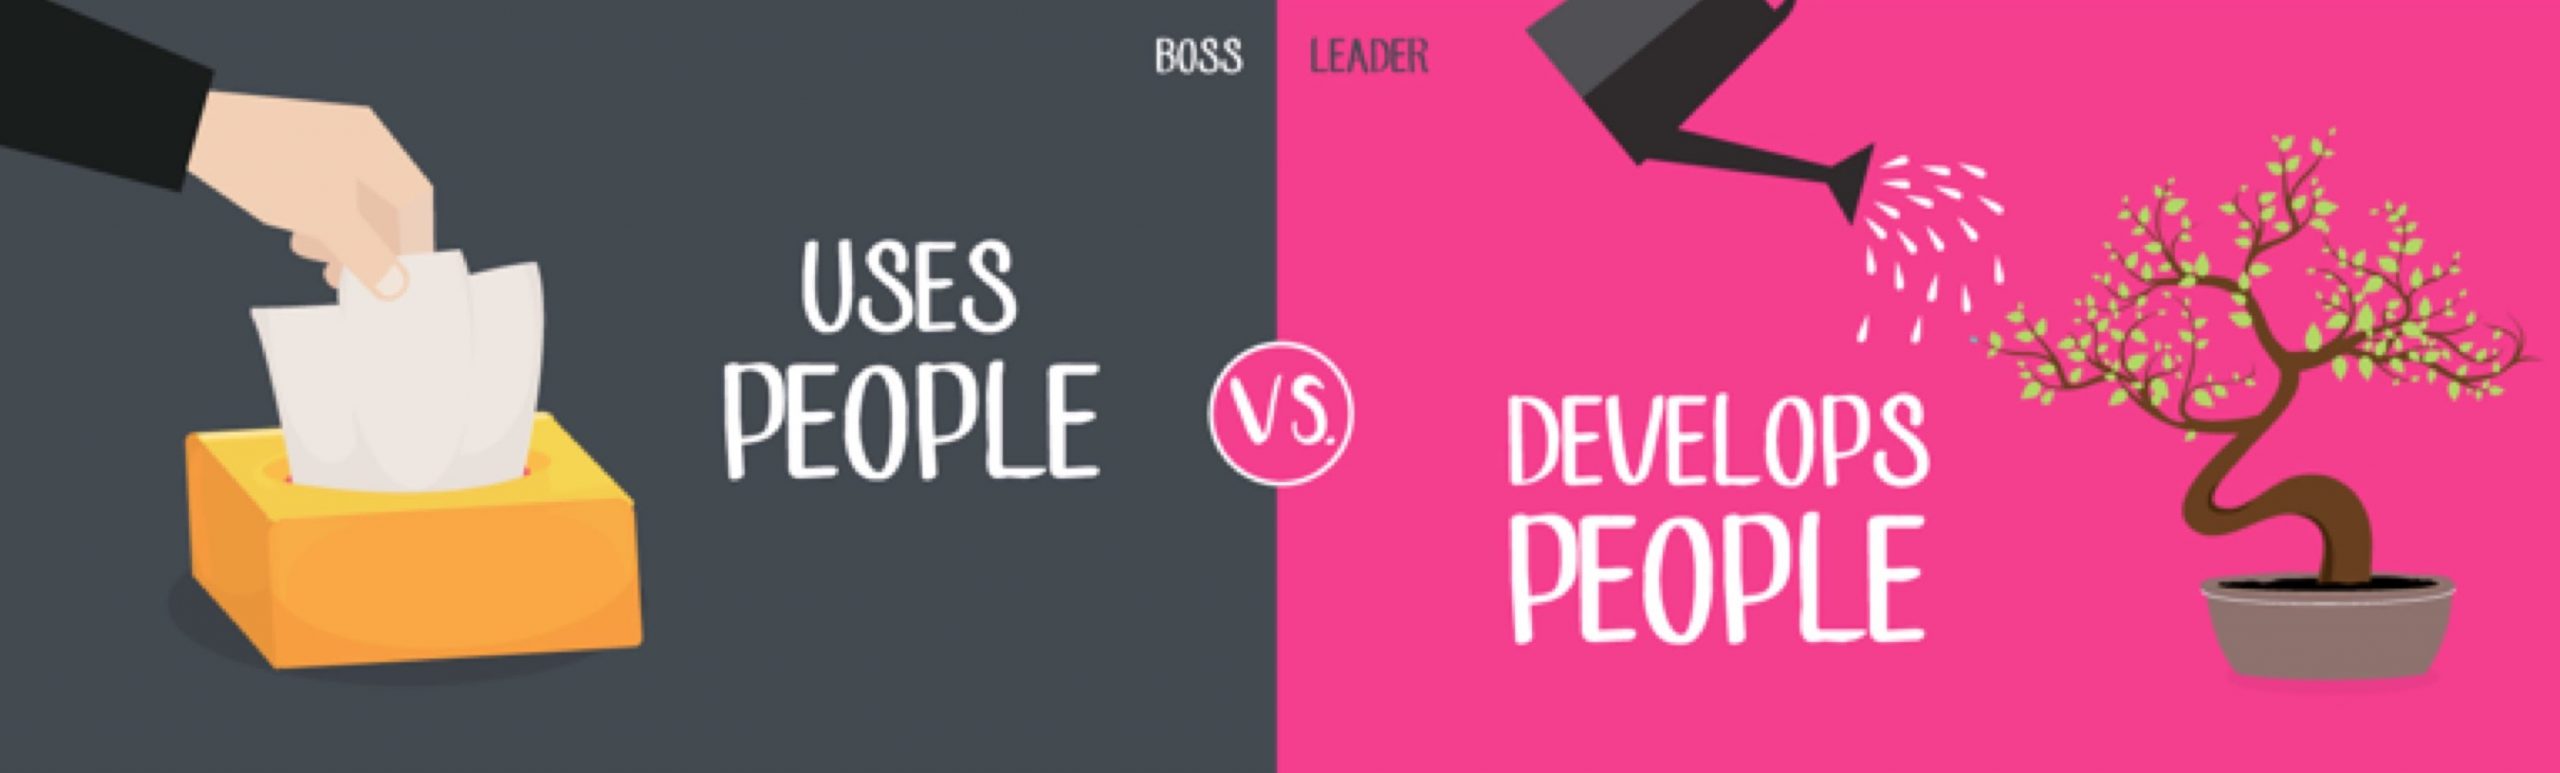 Лидеры развивают, а не используют людей. 